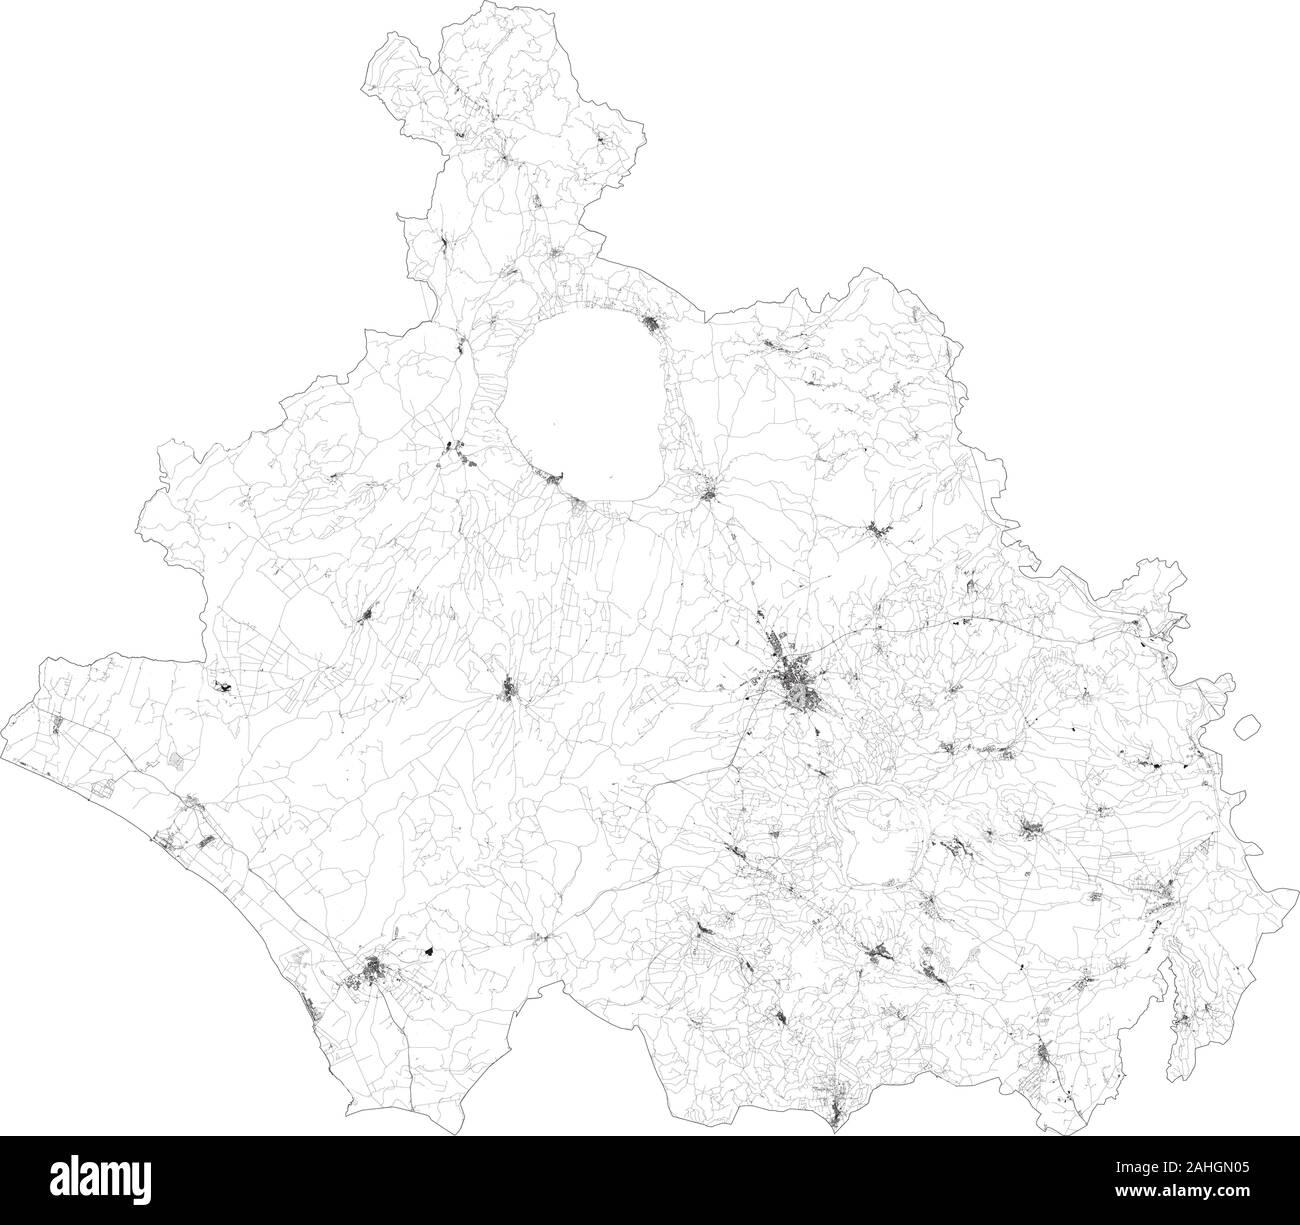 Sat-Karte der Provinz Viterbo Städte und Straßen, Gebäude und Straßen der Umgebung. Region Latium, Italien. Karte Straßen, Ringstraßen Stock Vektor